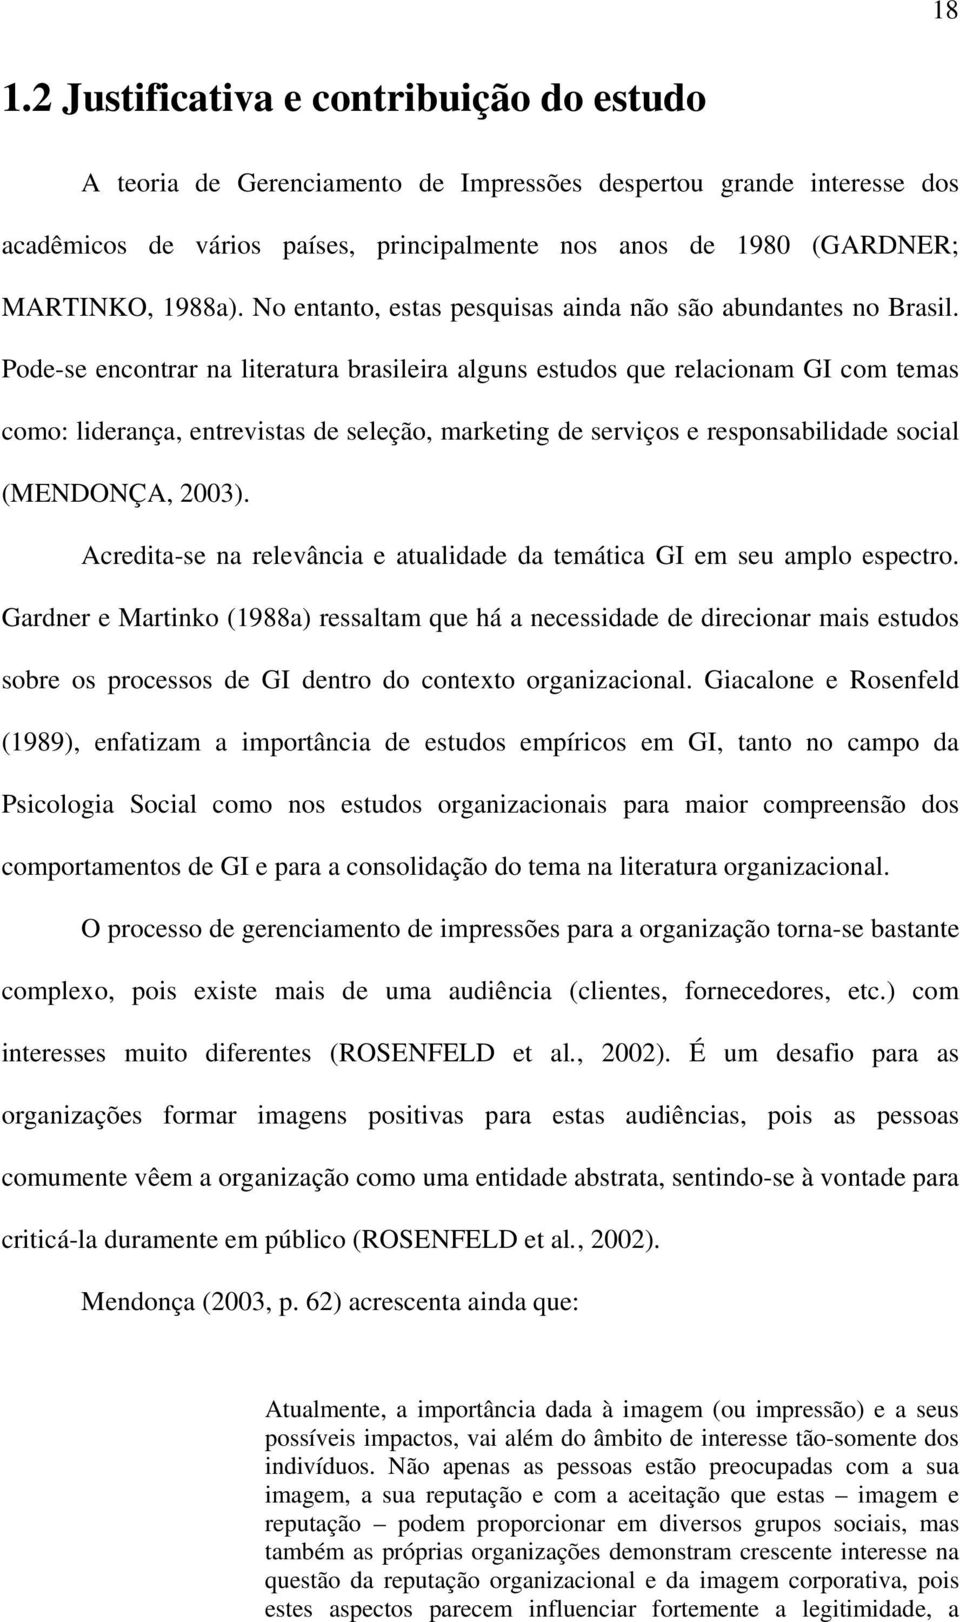 Pode-se encontrar na literatura brasileira alguns estudos que relacionam GI com temas como: liderança, entrevistas de seleção, marketing de serviços e responsabilidade social (MENDONÇA, 2003).